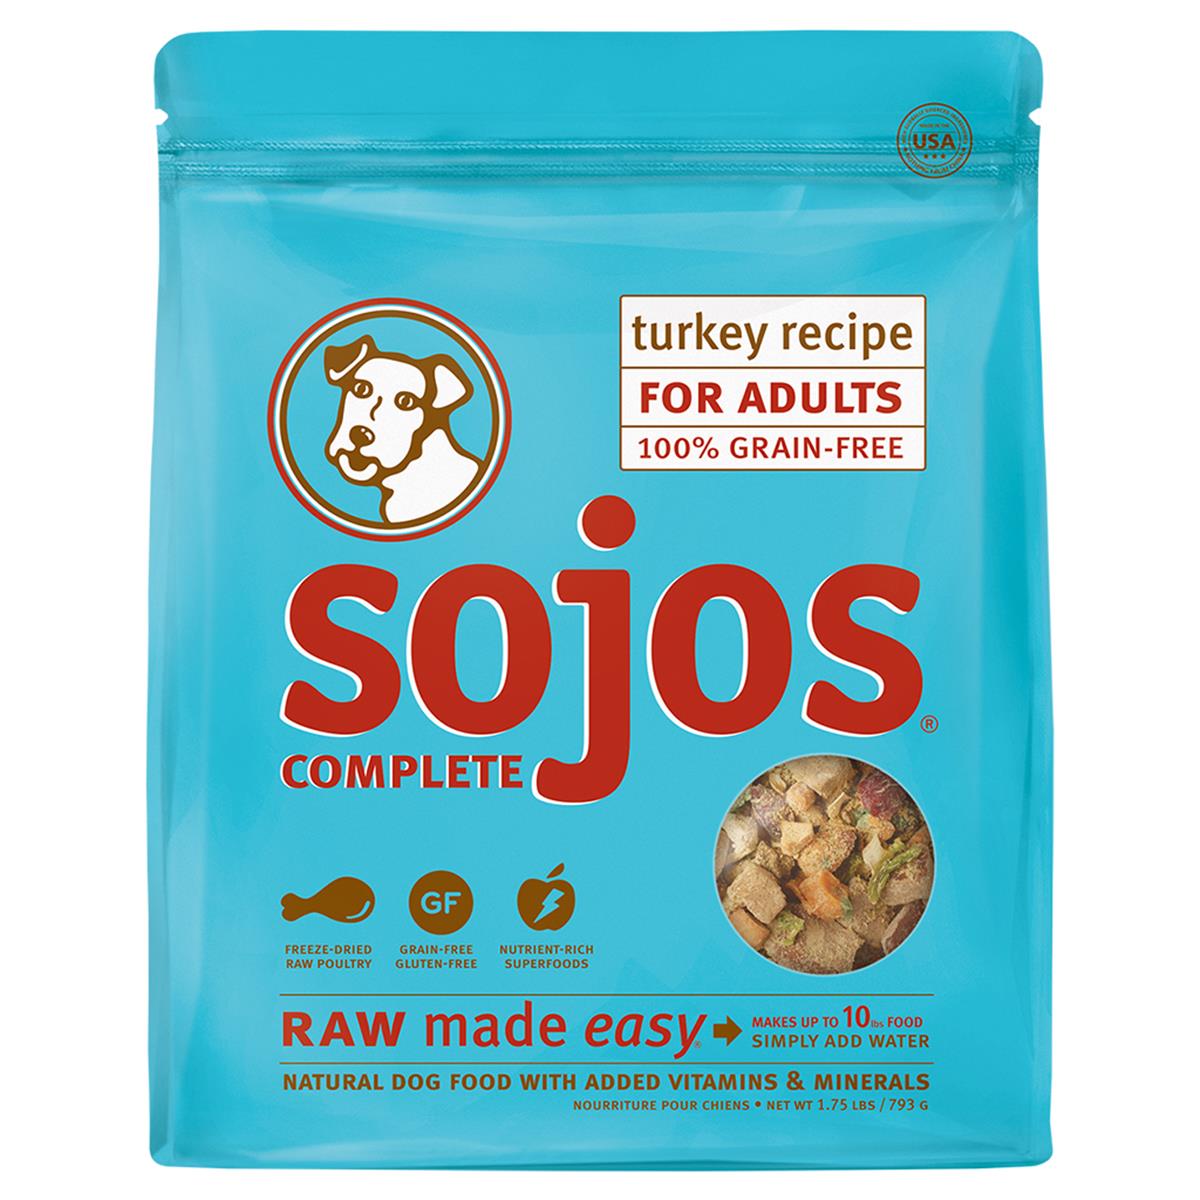 Sj60175 1.75 Lbs Turkey Grain-free Dog Food